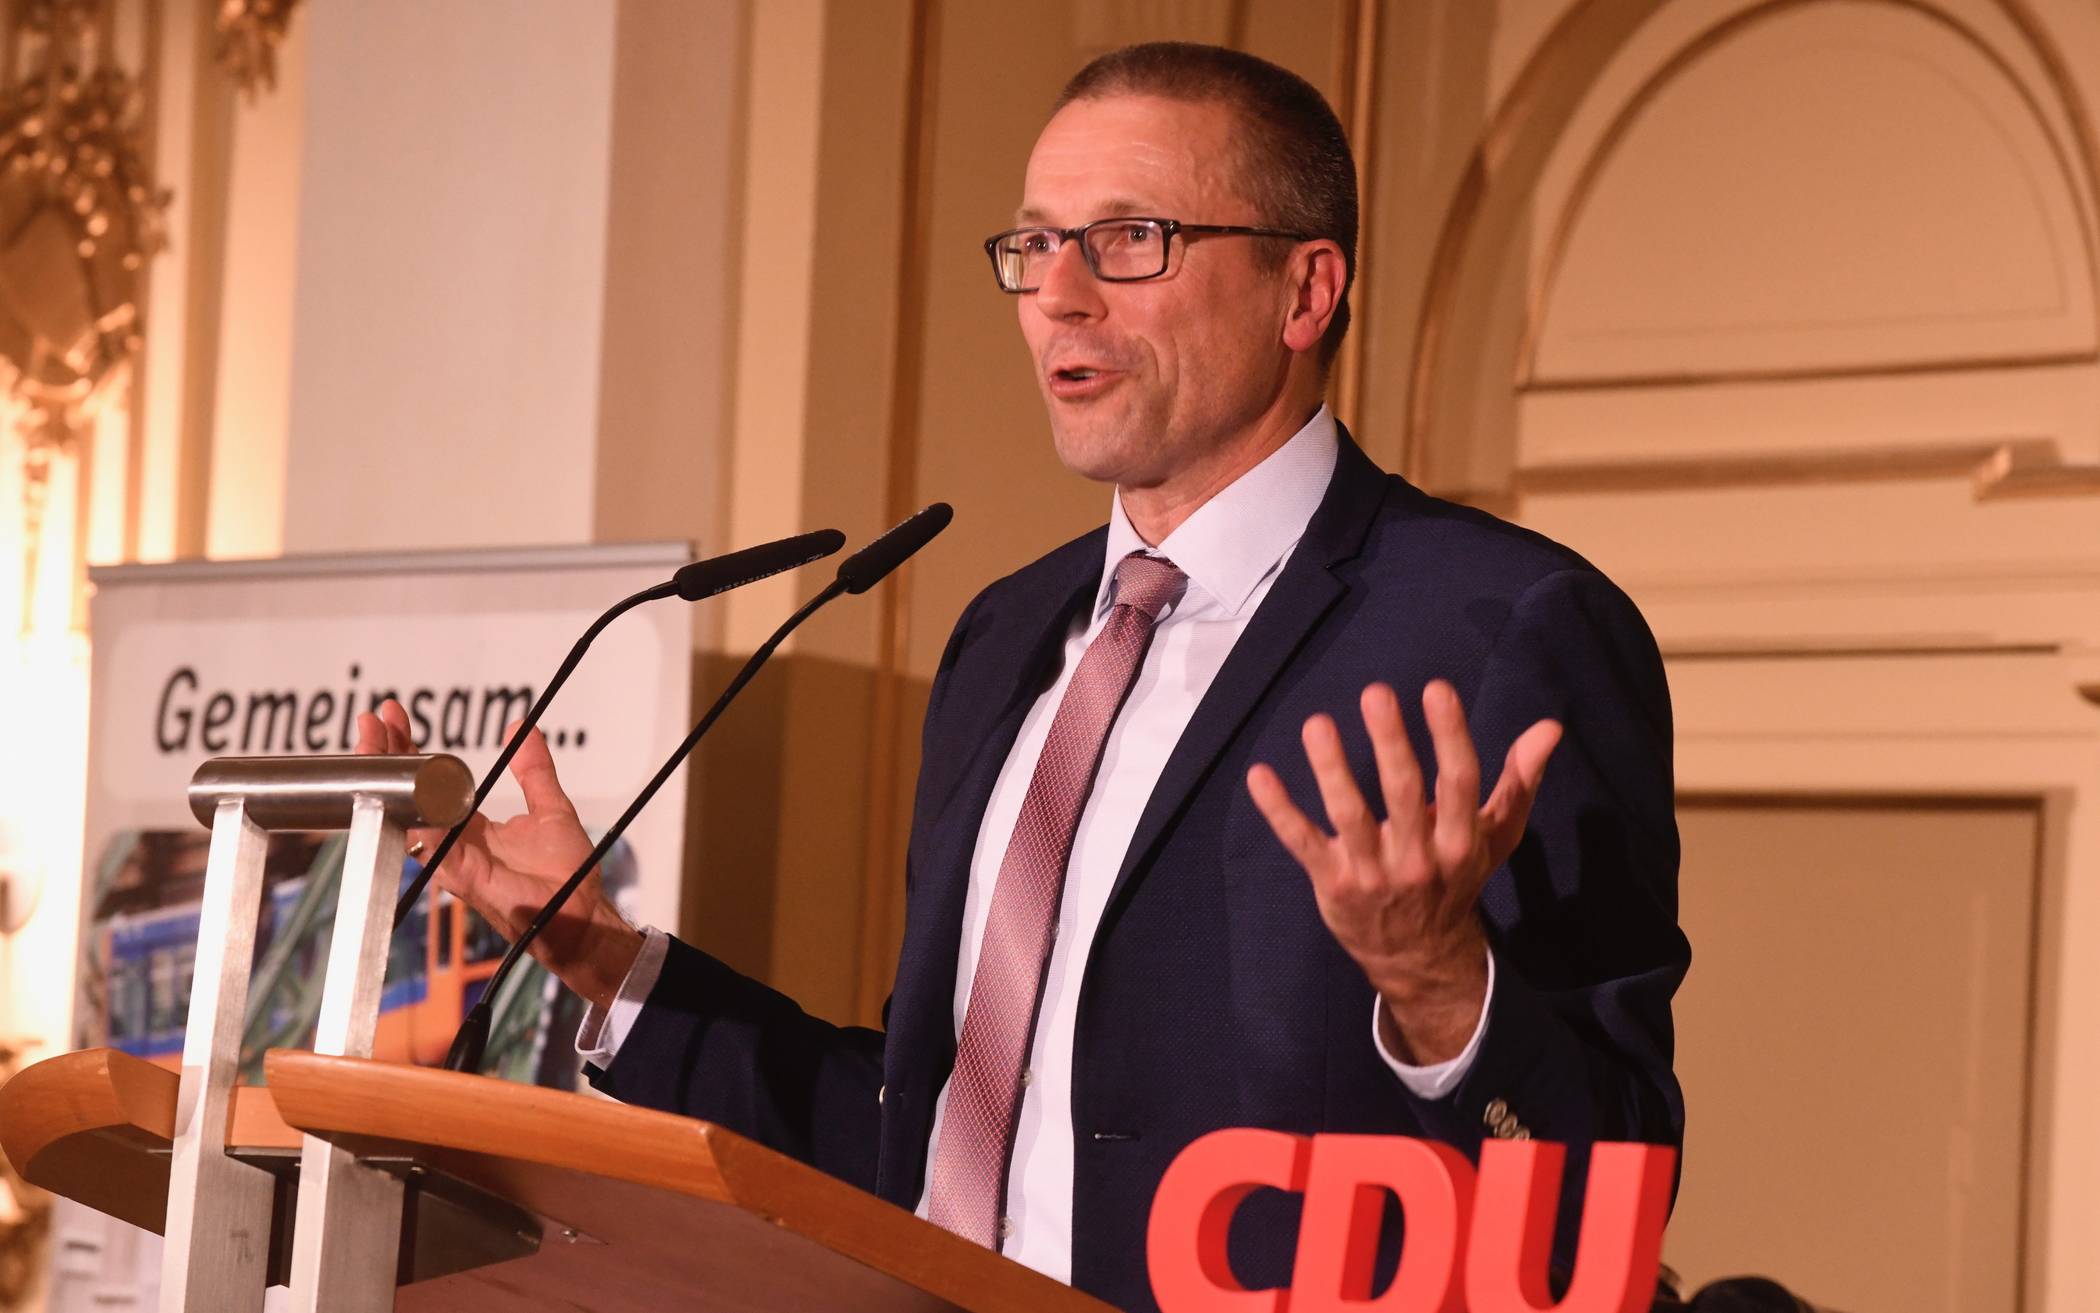 Uwe Schneidewind auf dem Rednerpult zwischen dem CDU-Slogan „Gemeinsam“ und dem Schriftzug der Partei.